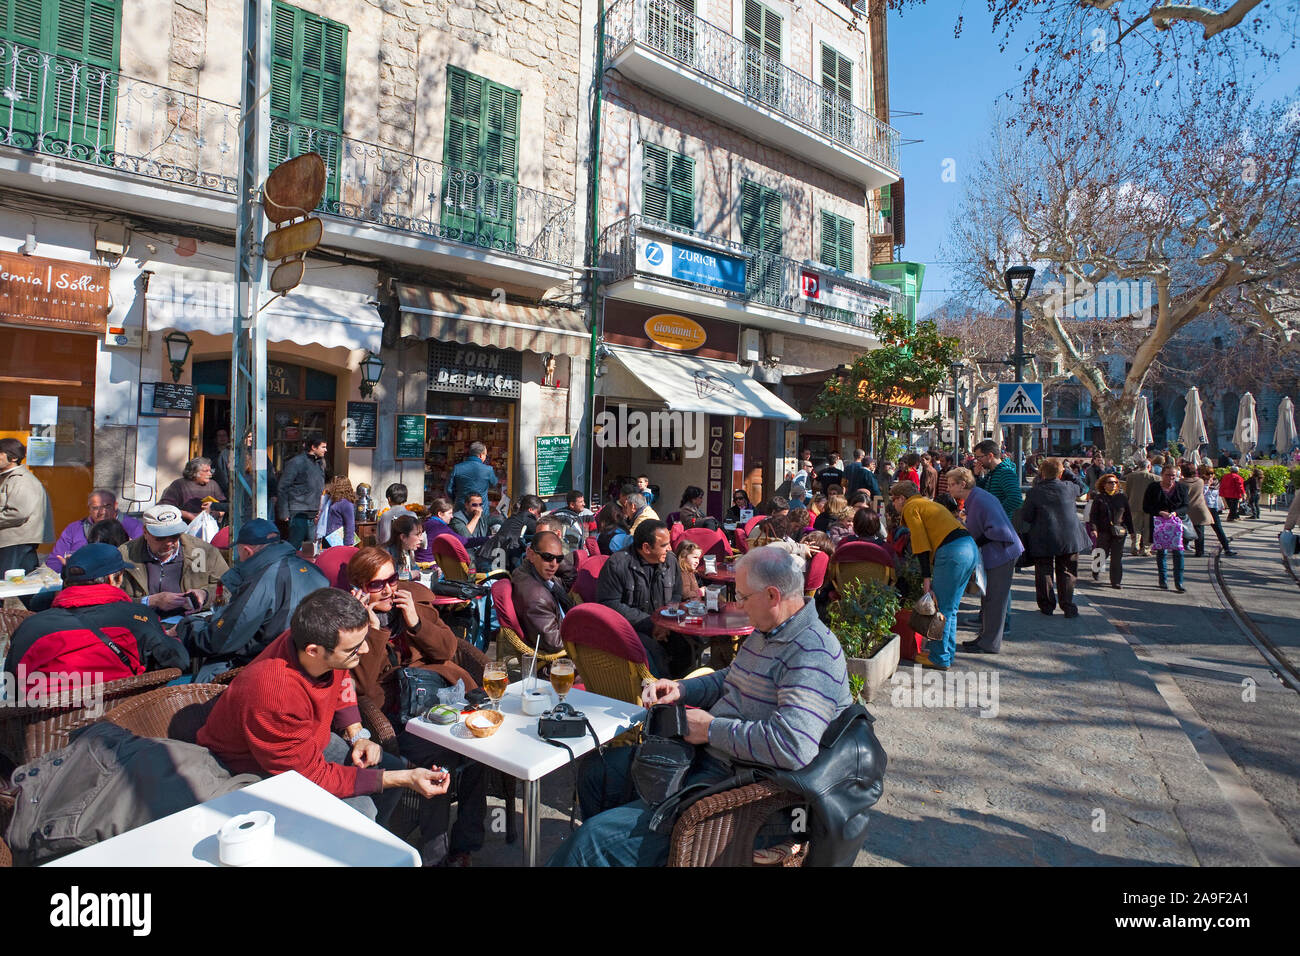 People at a cafe, Plaza de la Constitución, Soller, Mallorca, Balearic islands, Spain Stock Photo